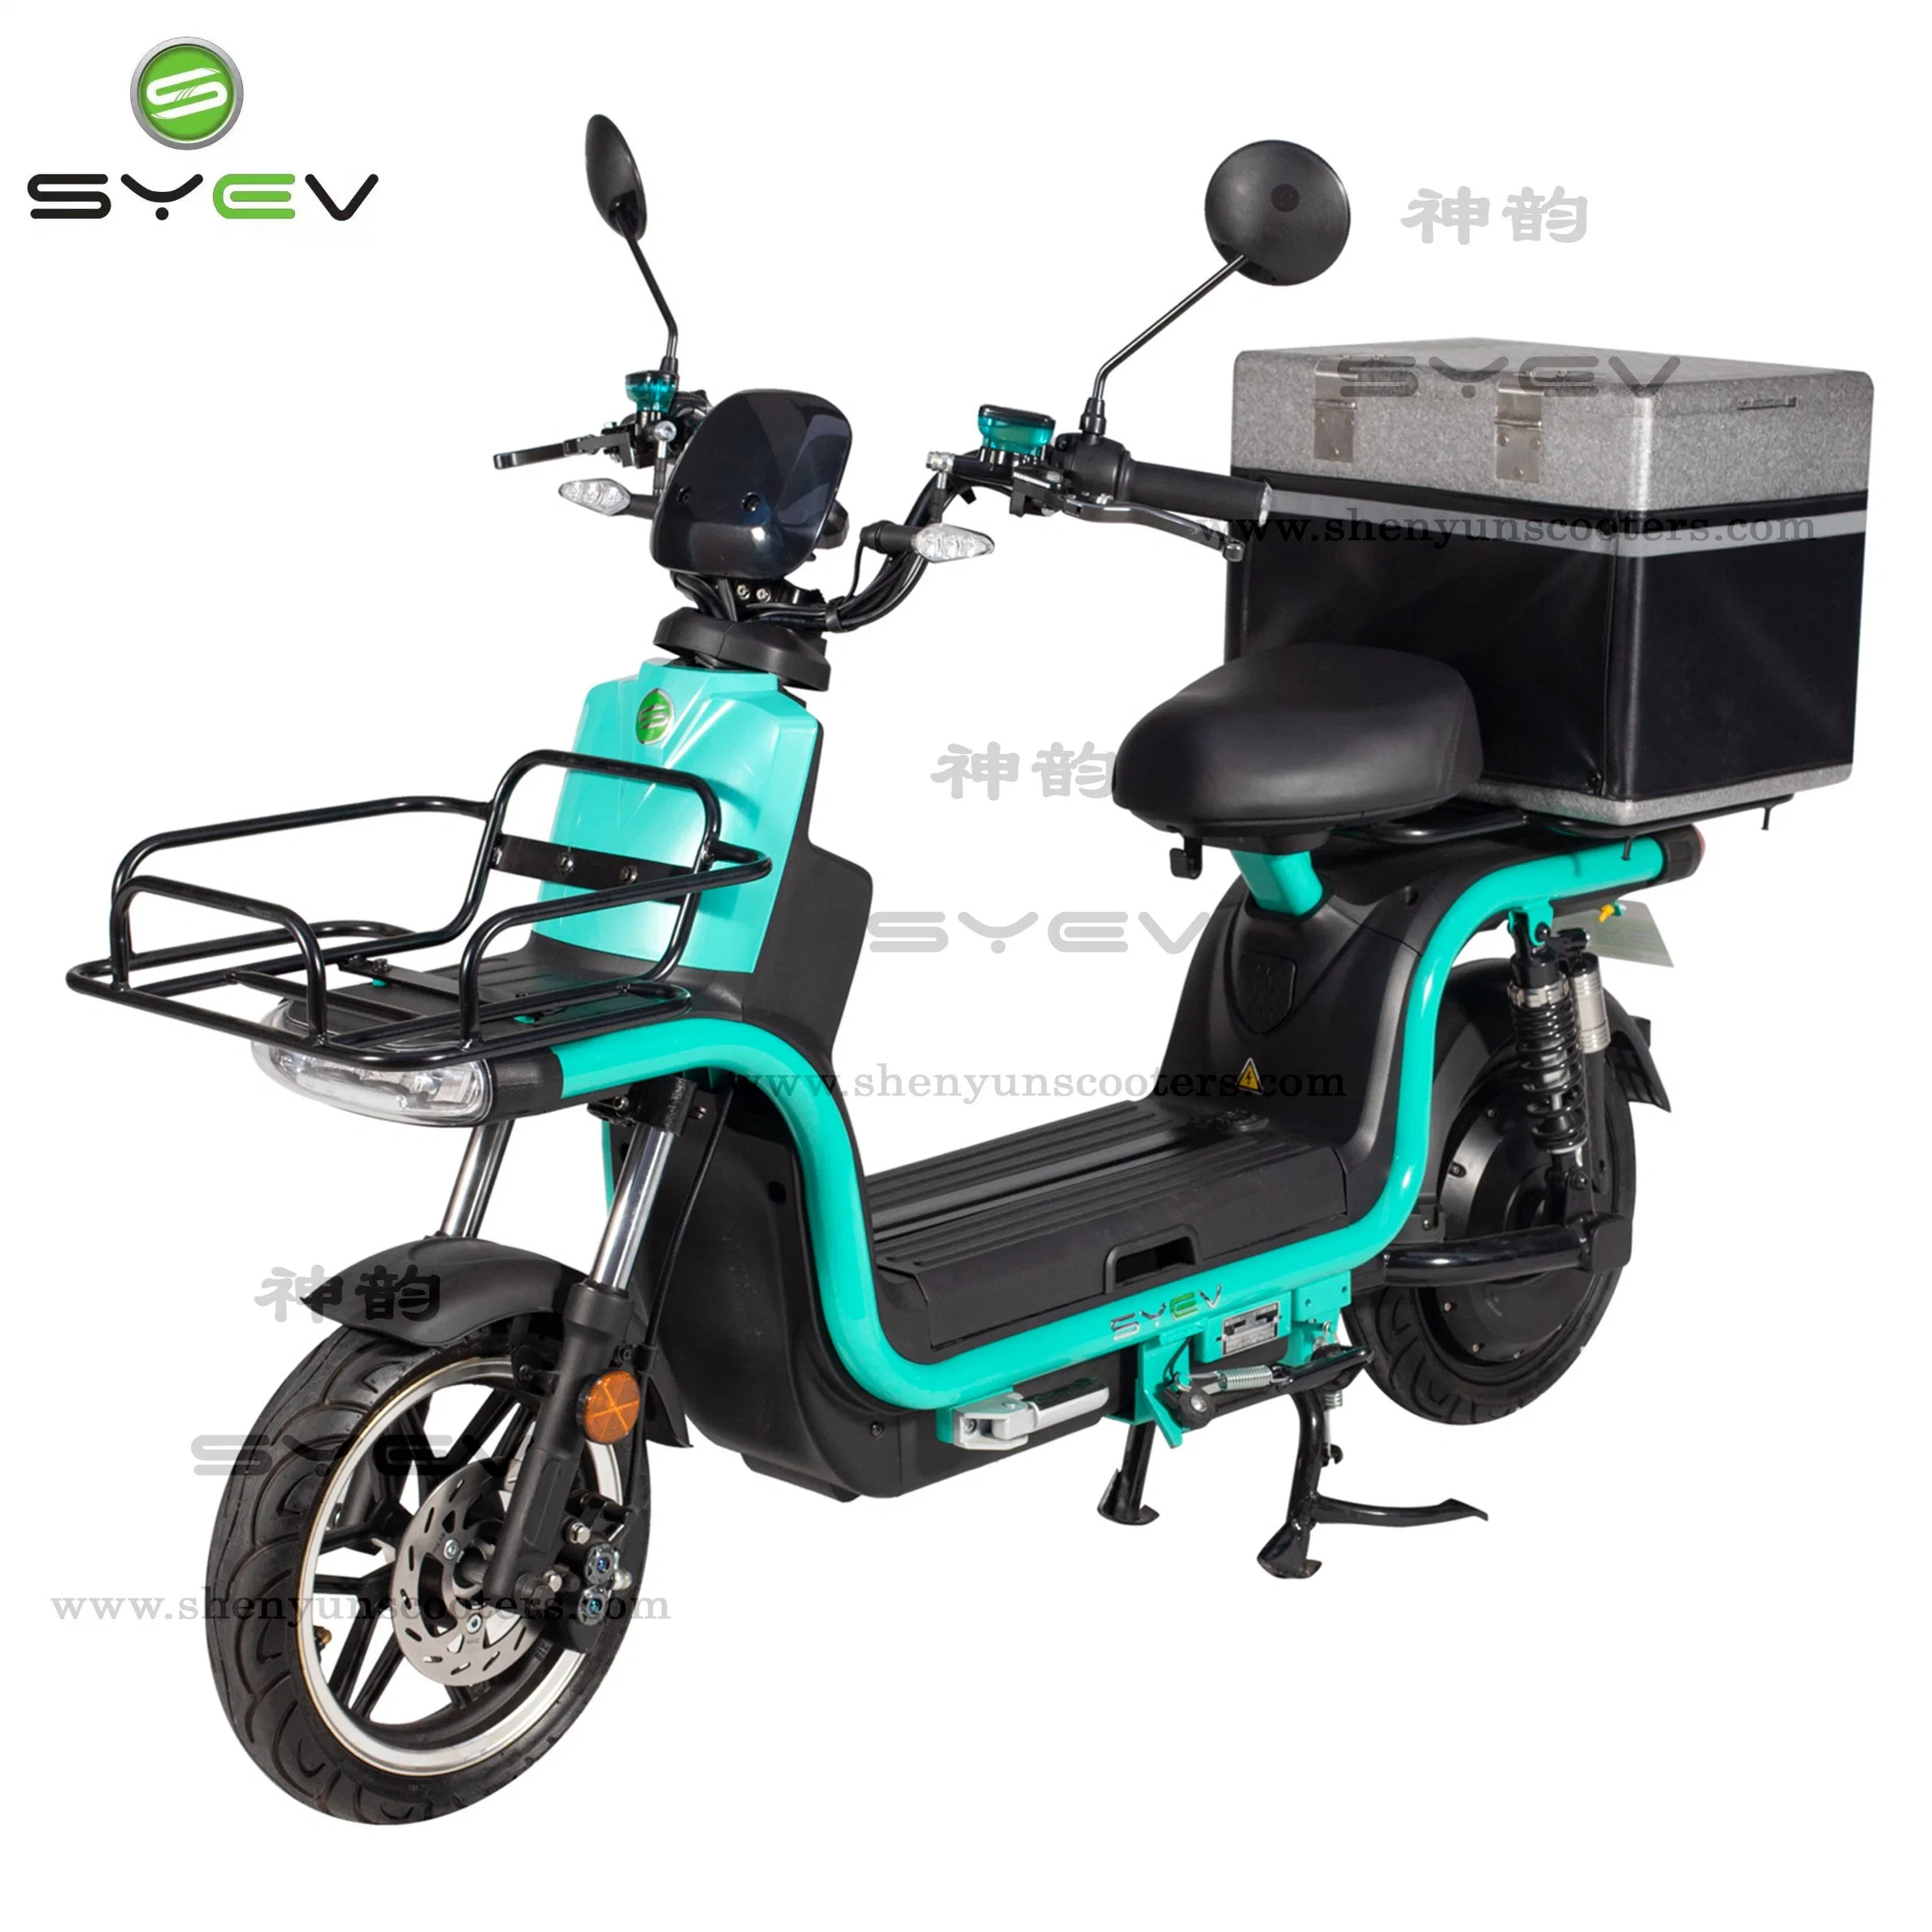 CE/EEC/Coc zugelassenes, leistungsfähiges Elektromotorrad für Fast Food Delivery